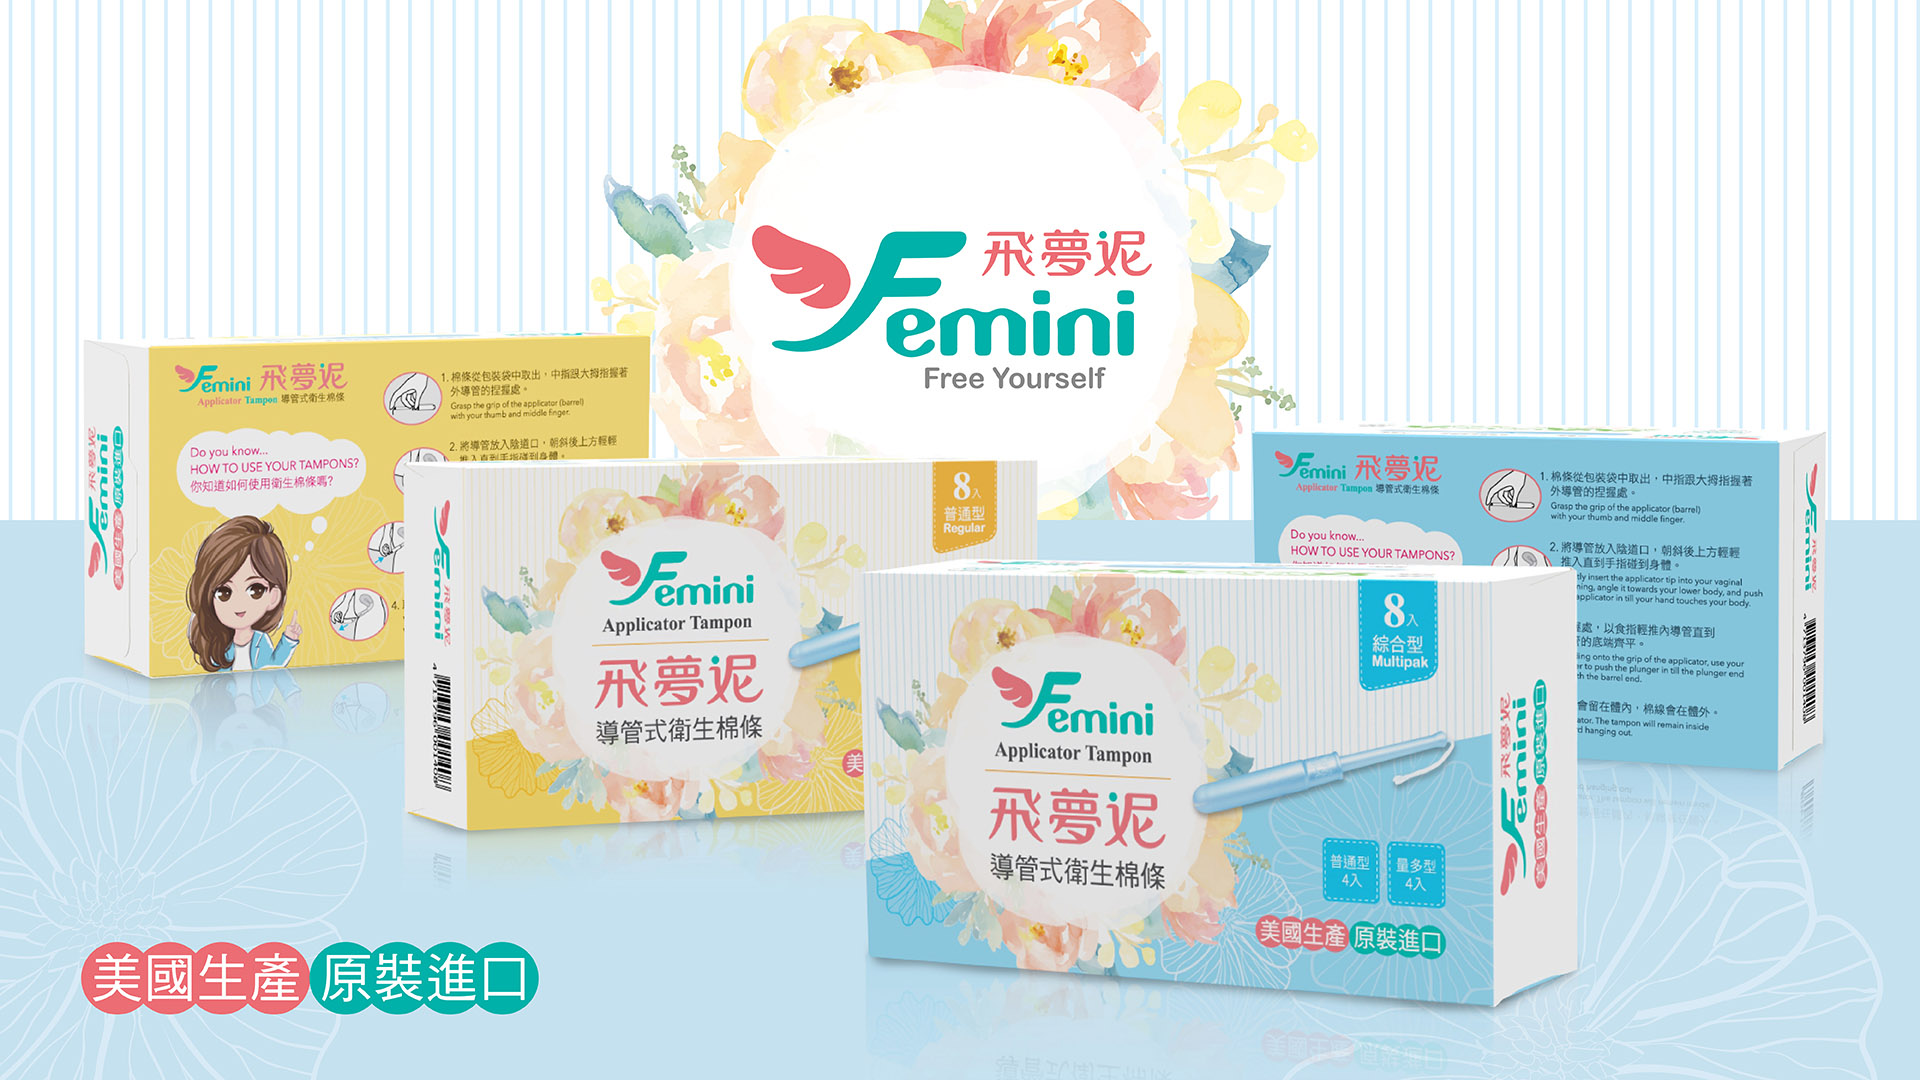 femini 飛夢妮+台中商標設計、型錄設計、包裝設計、網頁設計、企業及品牌形象視覺設計